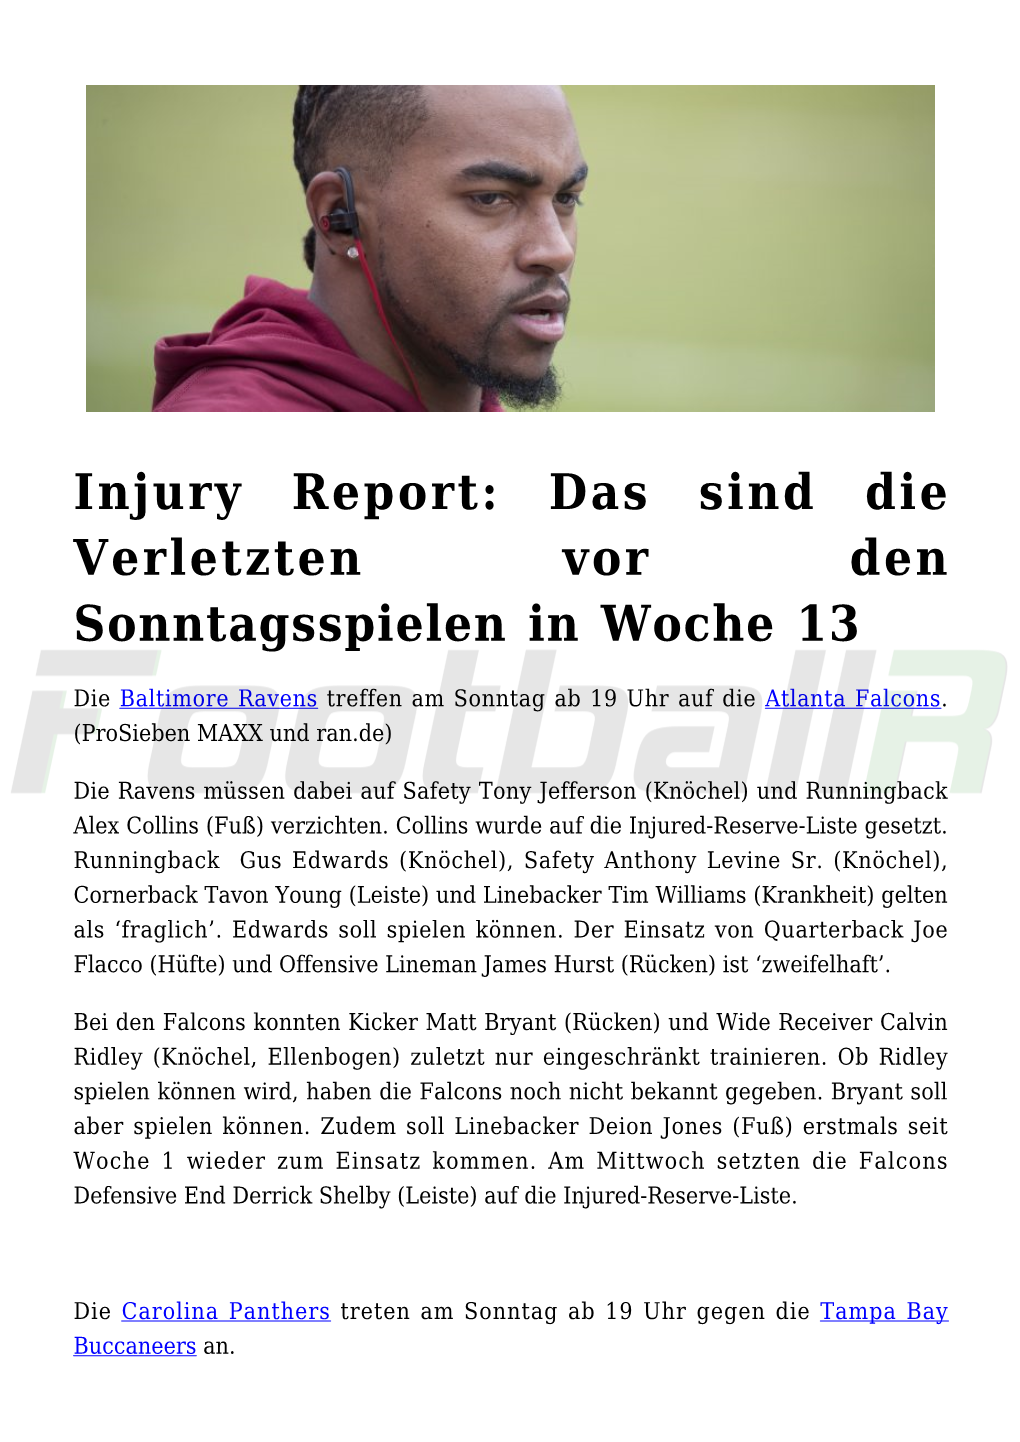 Injury Report: Das Sind Die Verletzten Vor Den Sonntagsspielen in Woche 13